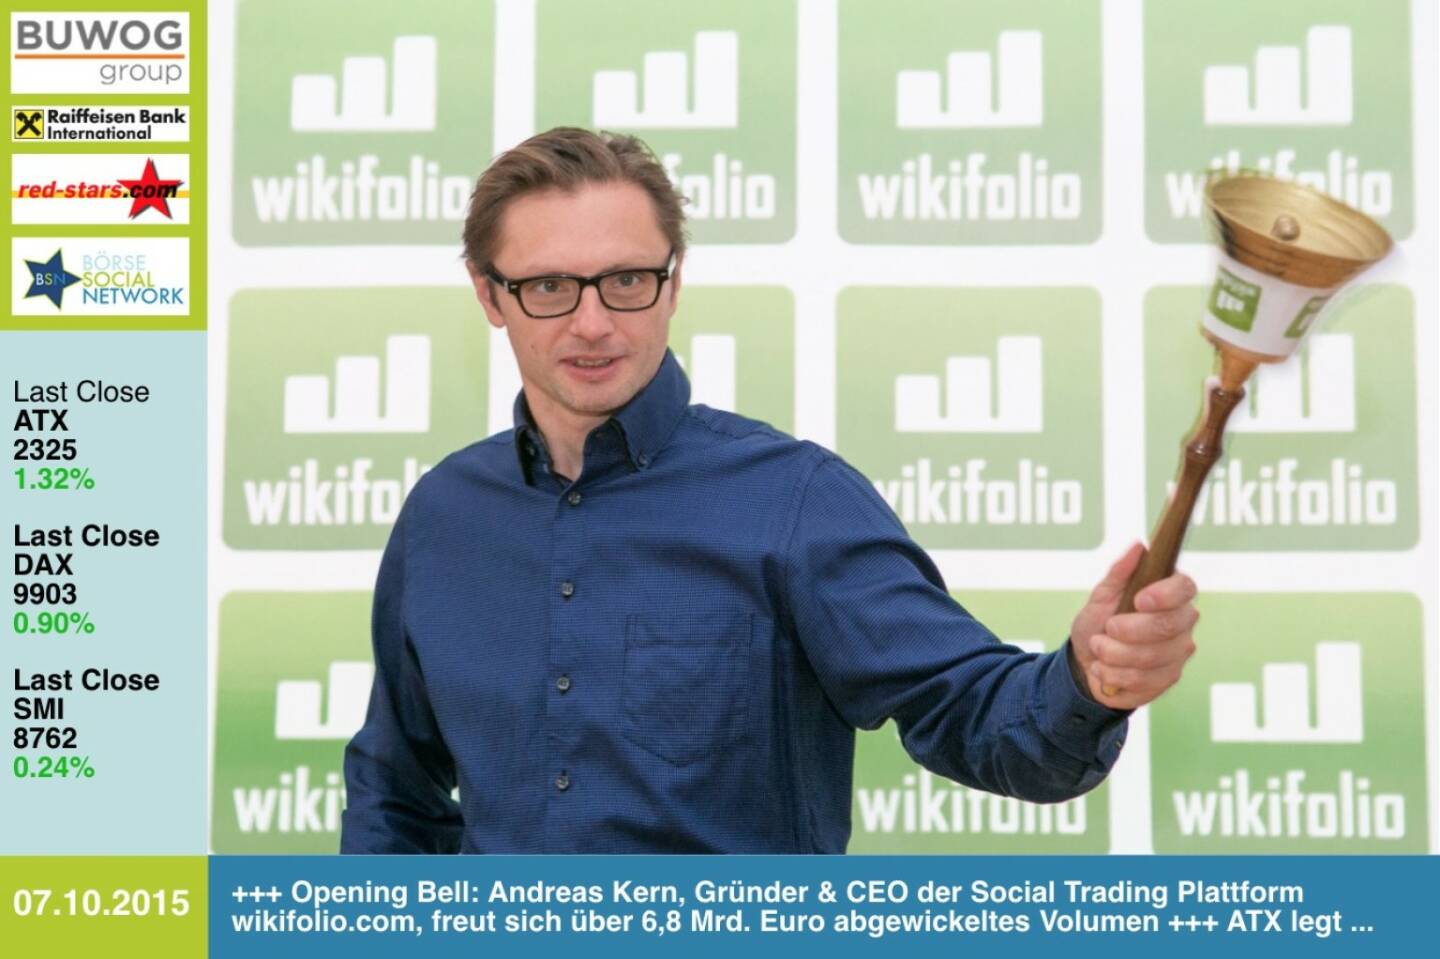 #openingbell am 7.10.: Andreas Kern, Gründer & CEO der Social Trading Plattform wikifolio.com, freut sich über 6,8 Mrd. Euro abgewickeltes Volumen http://www.openingbell.eu http://www.wikifolio.com